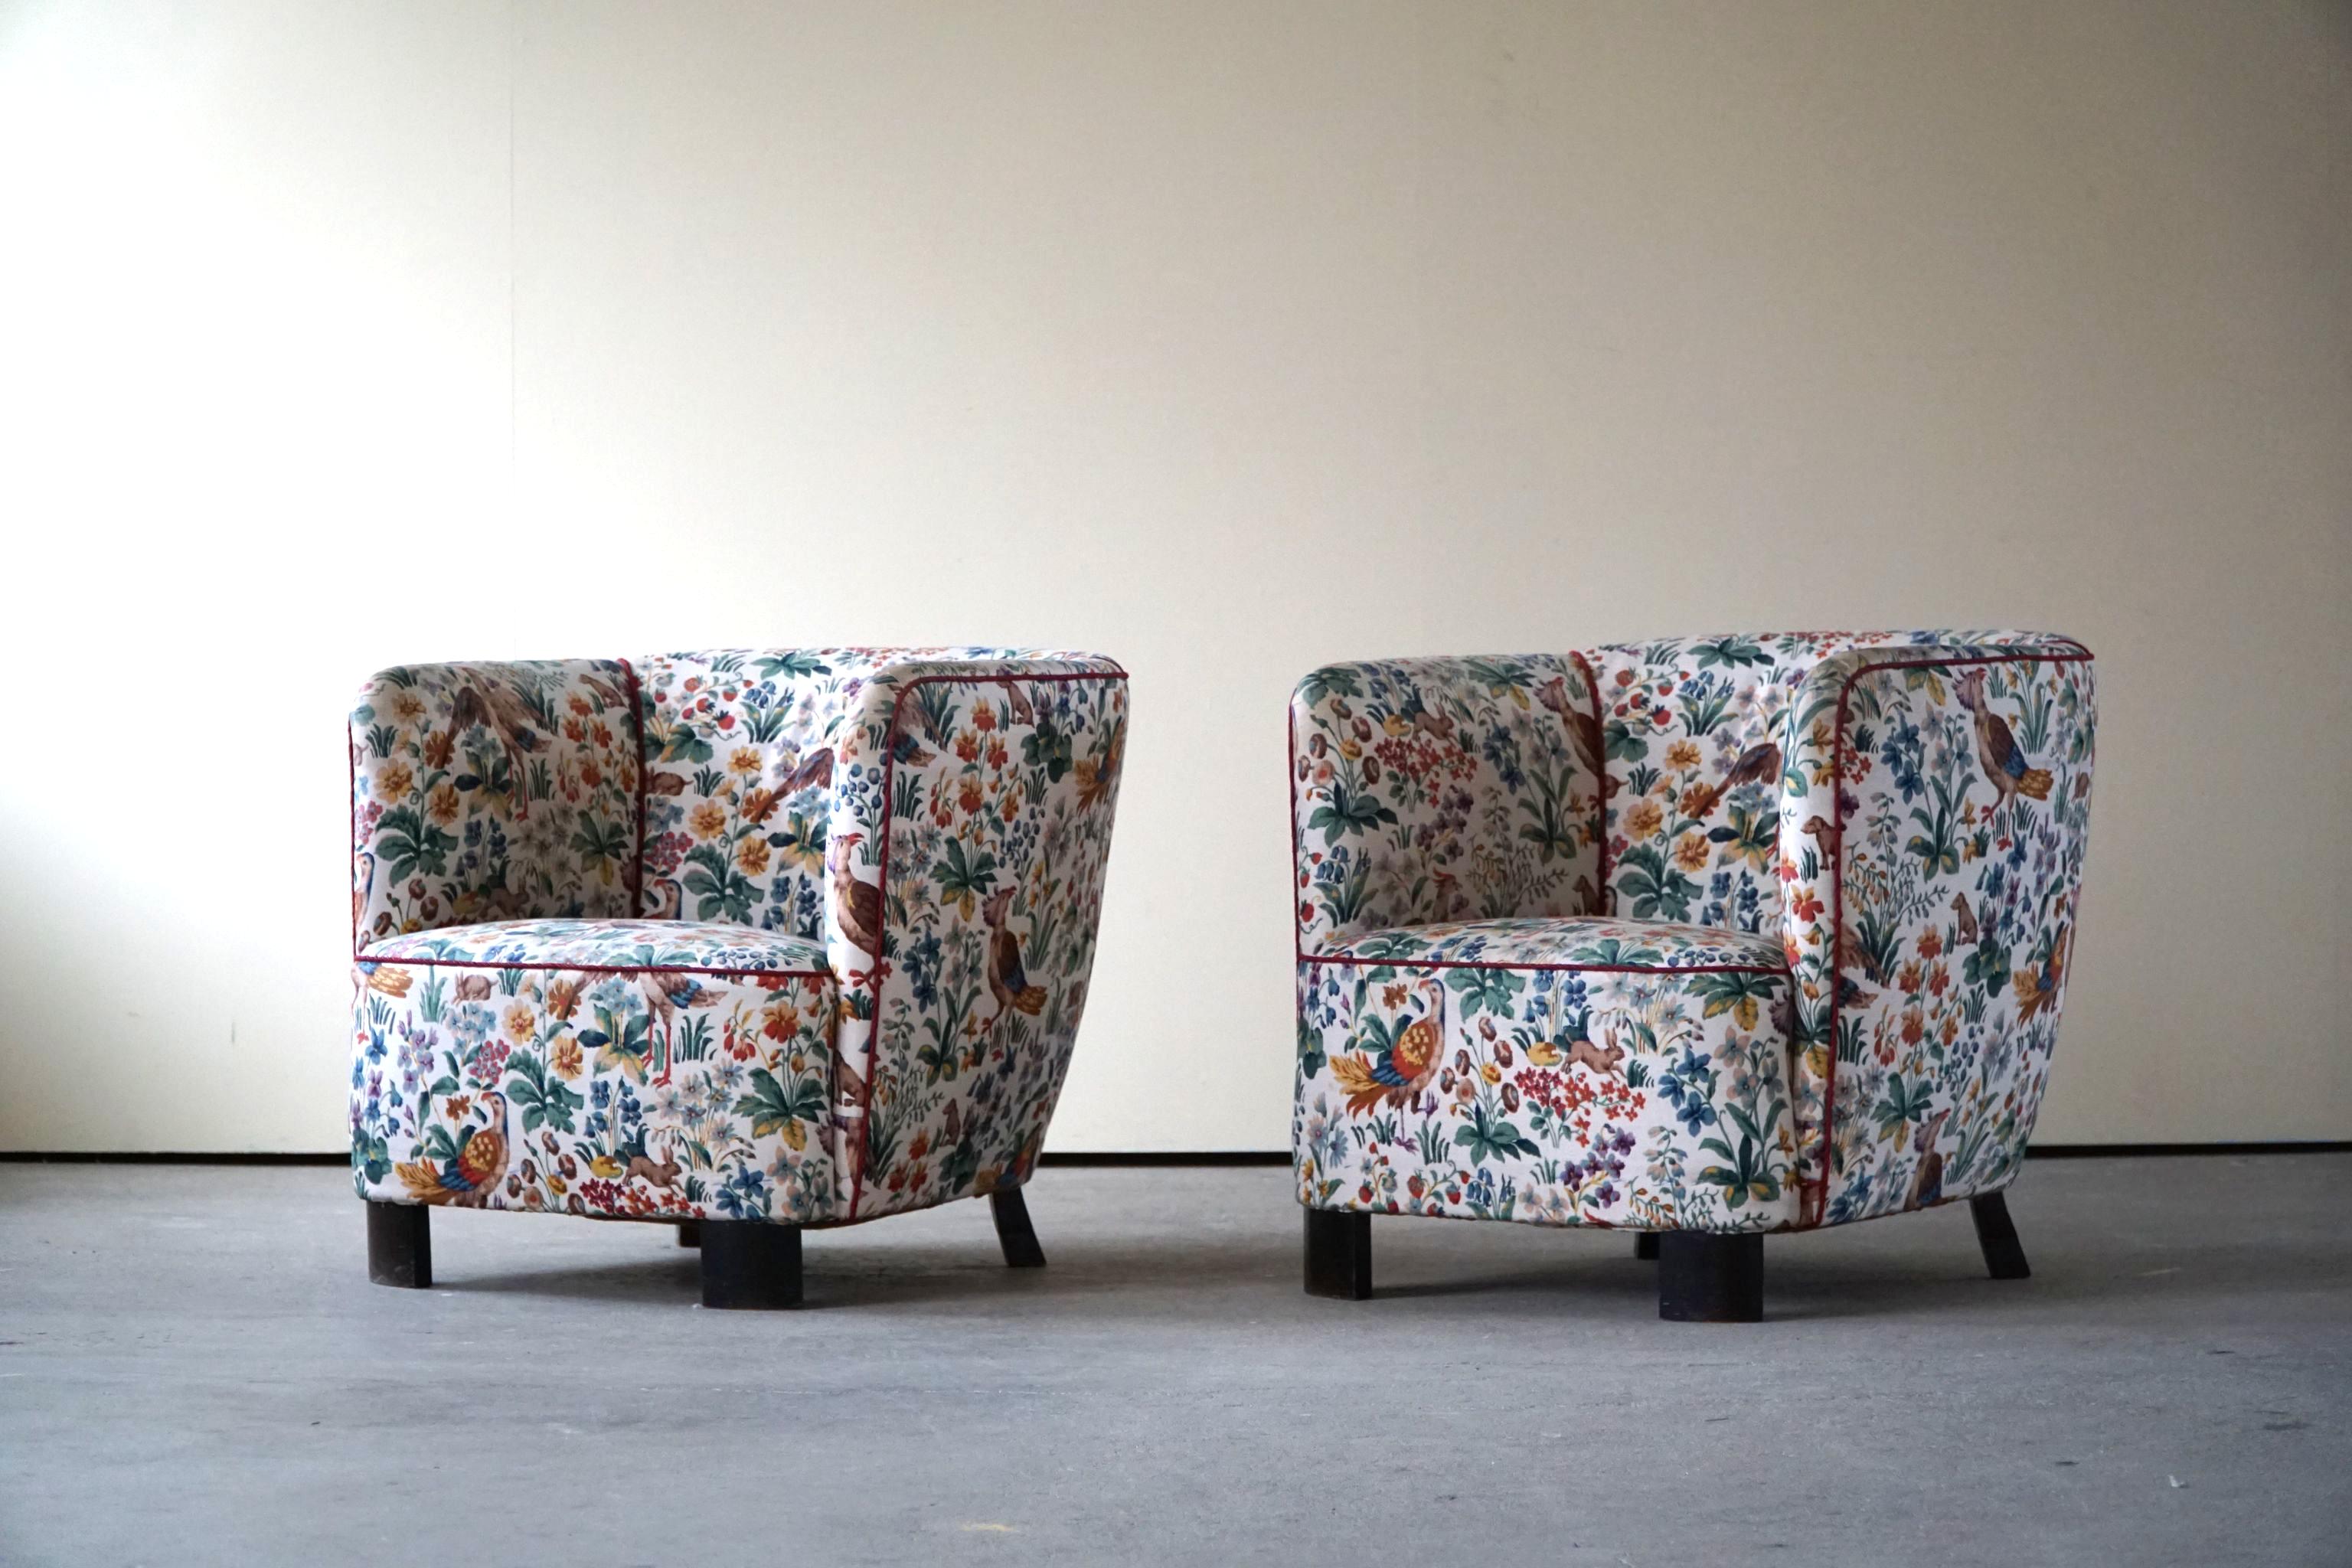 Une rare paire de fauteuils confortables avec de belles courbes. Tissu original avec des motifs d'oiseaux décoratifs, fabriqué par un ébéniste danois qualifié dans les années 1940. Ces magnifiques chaises sont fabriquées dans le style du designer et